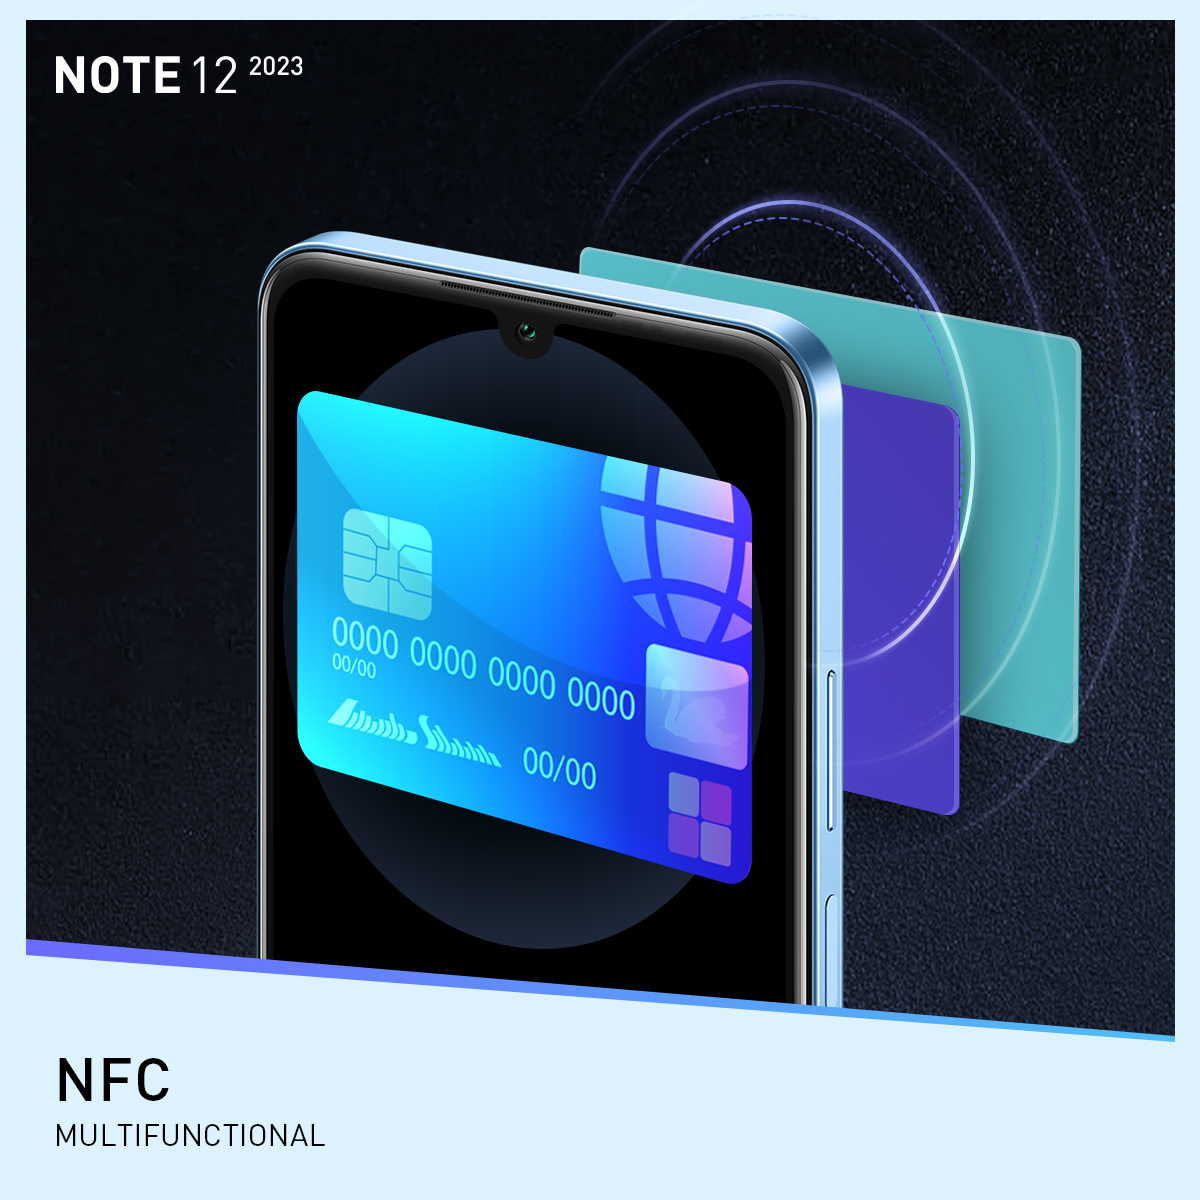 NFC Multifunctional